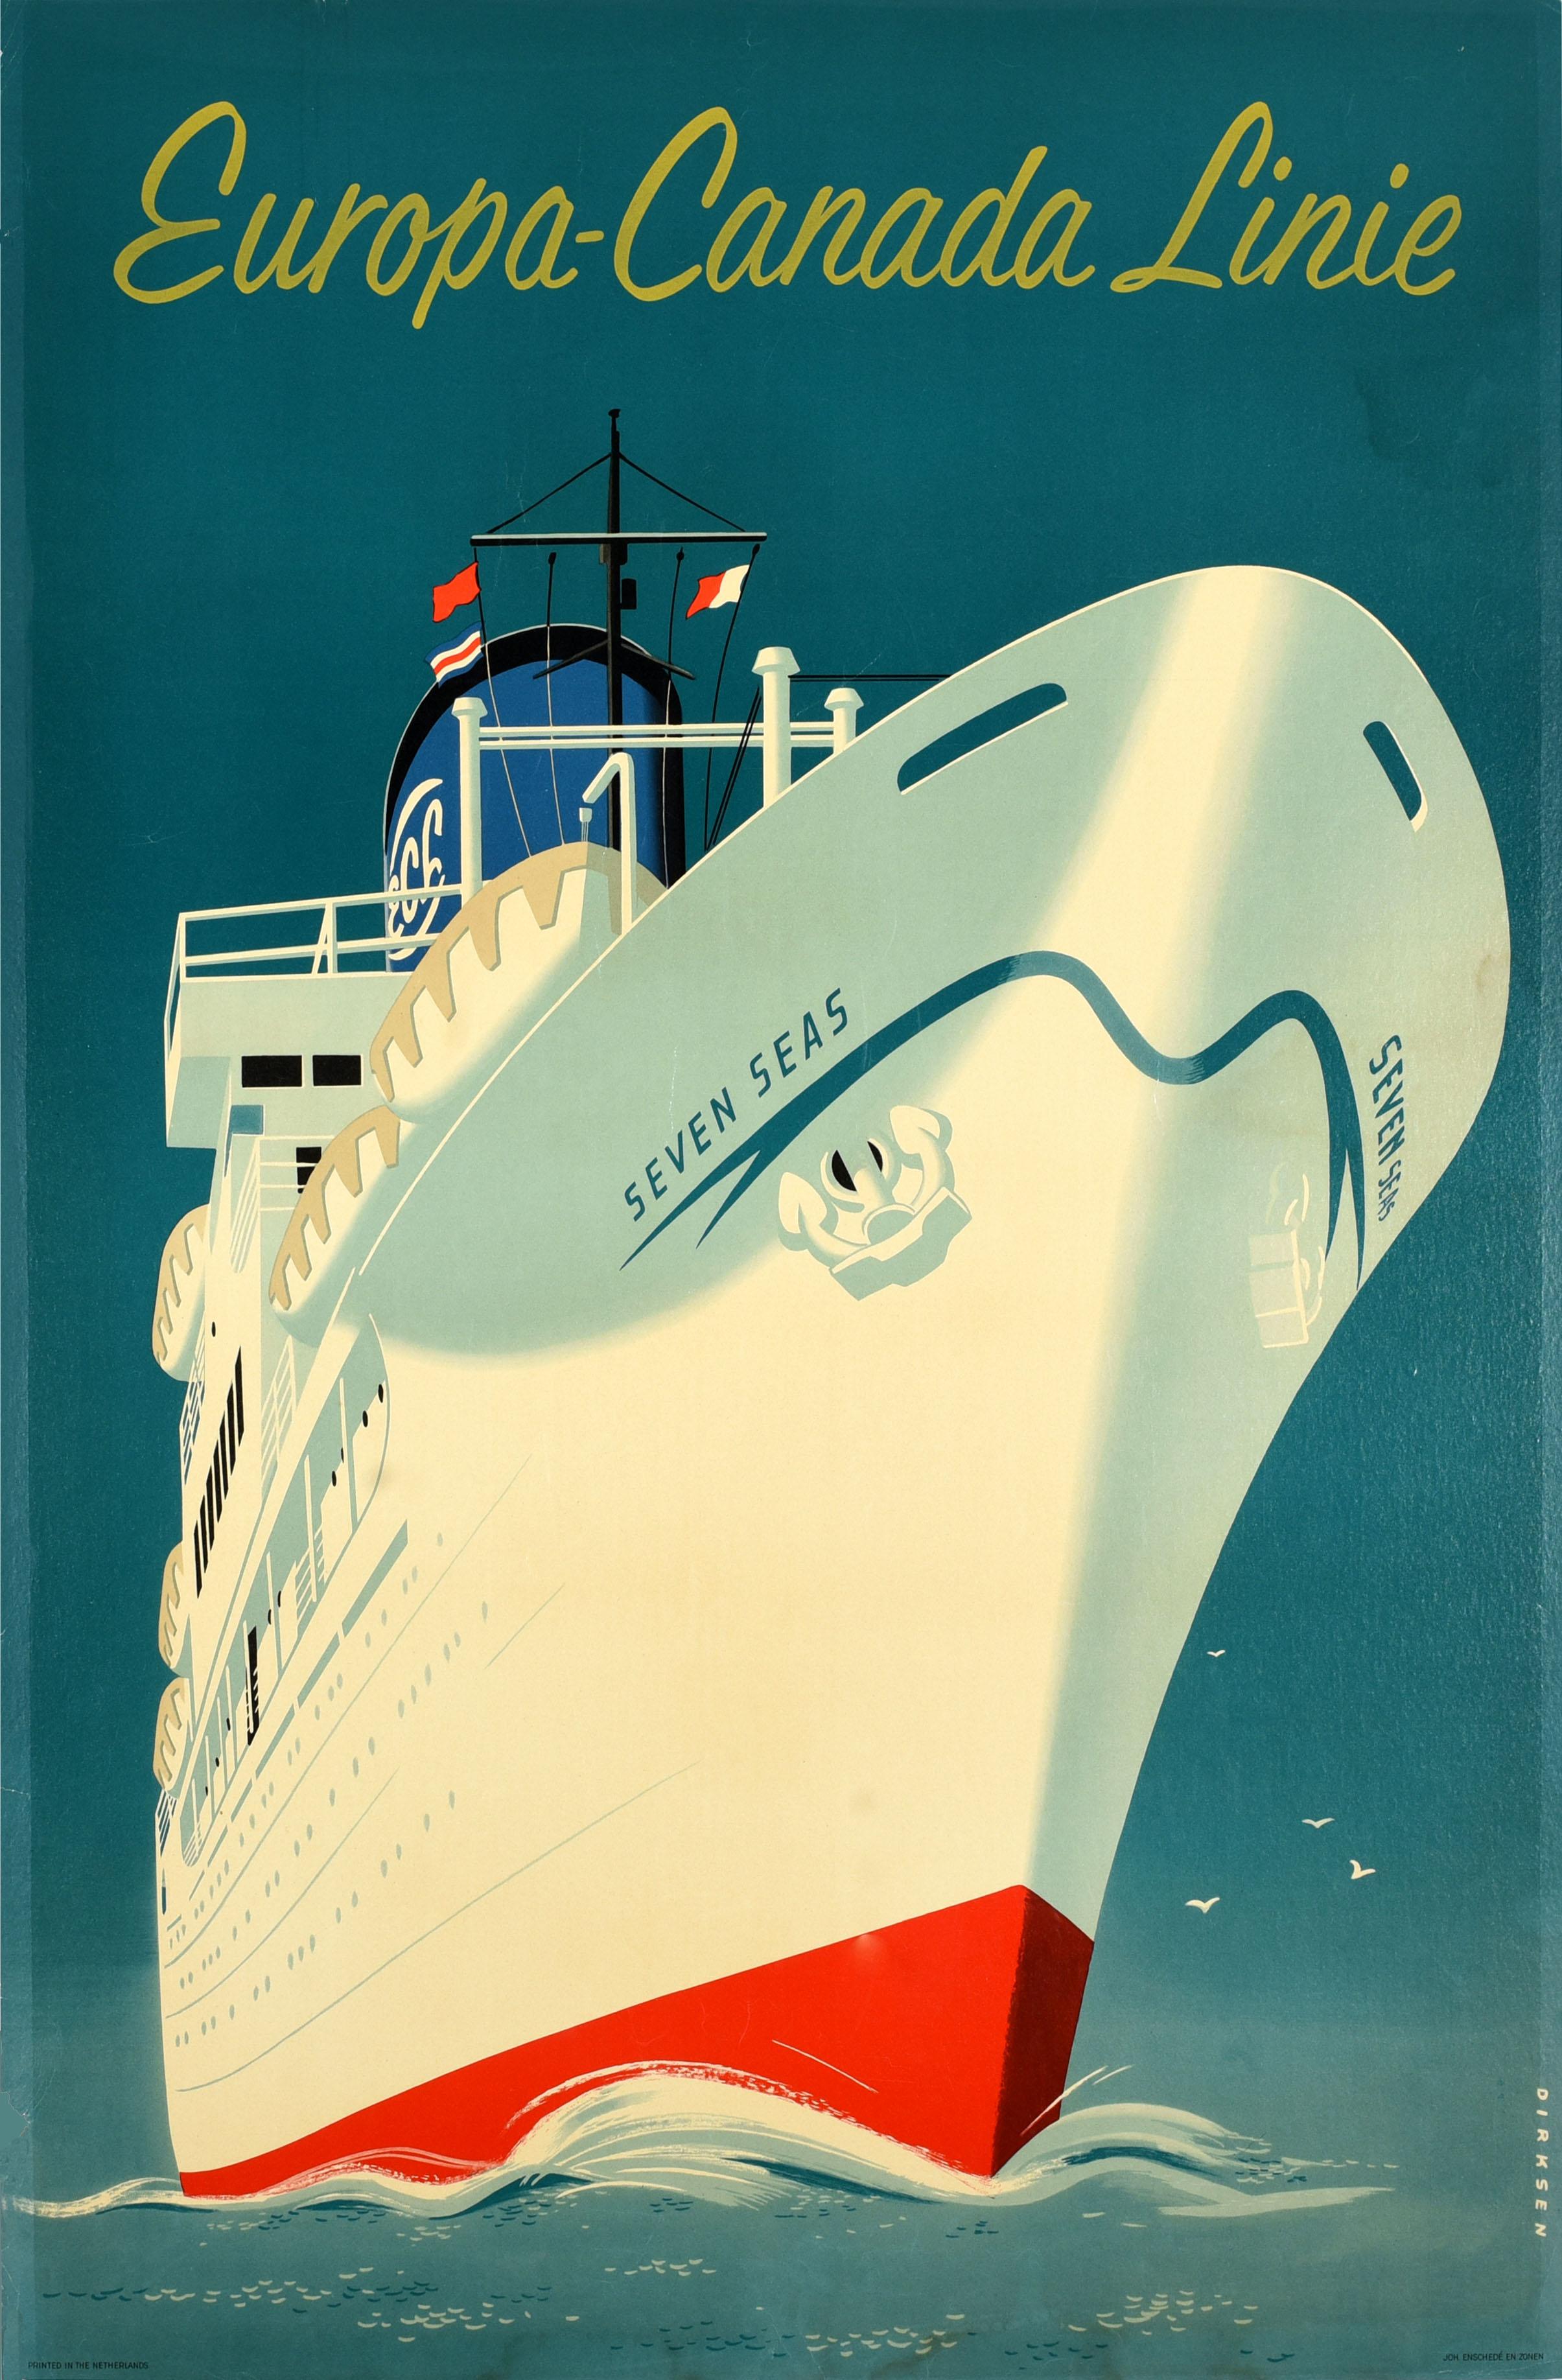 Reyn Dirksen Print – Original-Vintage-Reise-Werbeplakat, Europa, Kanada, Versandlinie Dirksen